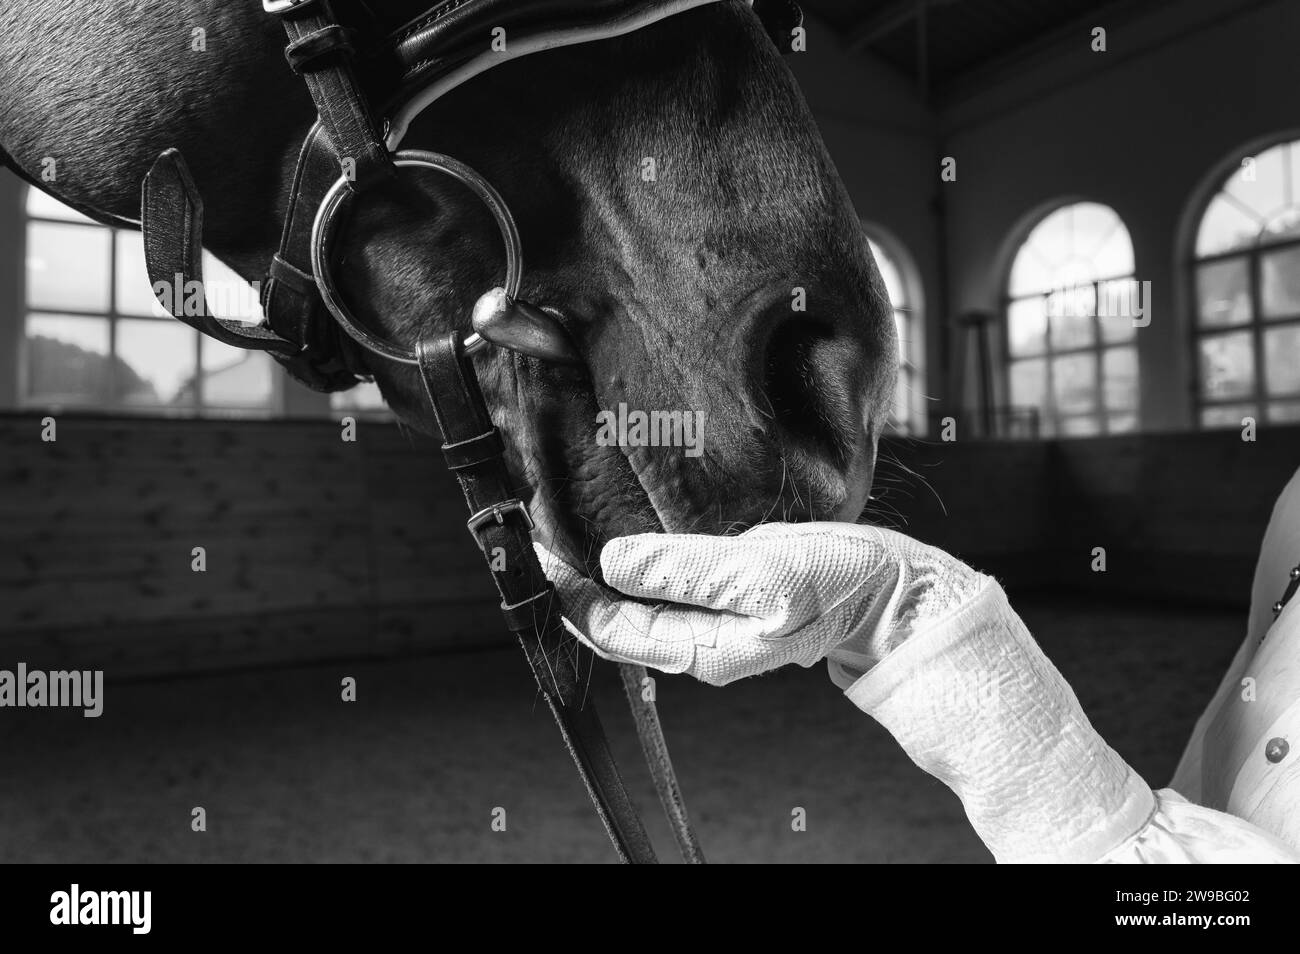 Image de la main d'un cavalier dans un gant. Le jockey nourrit le cheval. Gros plan portrait. Supports mixtes Banque D'Images